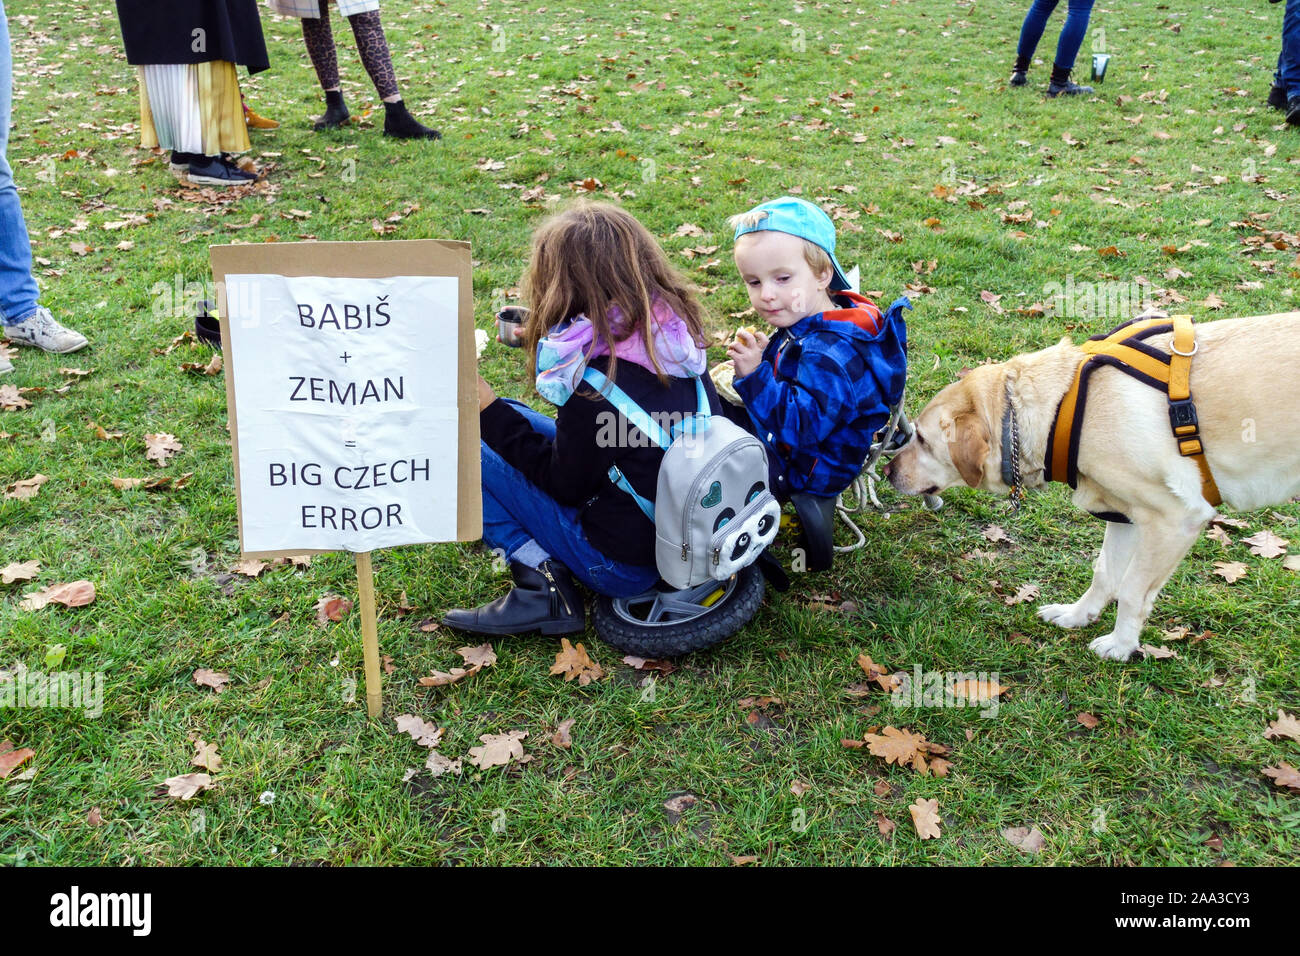 Babis Zeman, Grand pancarte d'erreur tchèque, les enfants de chien lors d'une manifestation contre des idiots utiles, les partisans russes Letna Prague République tchèque Banque D'Images